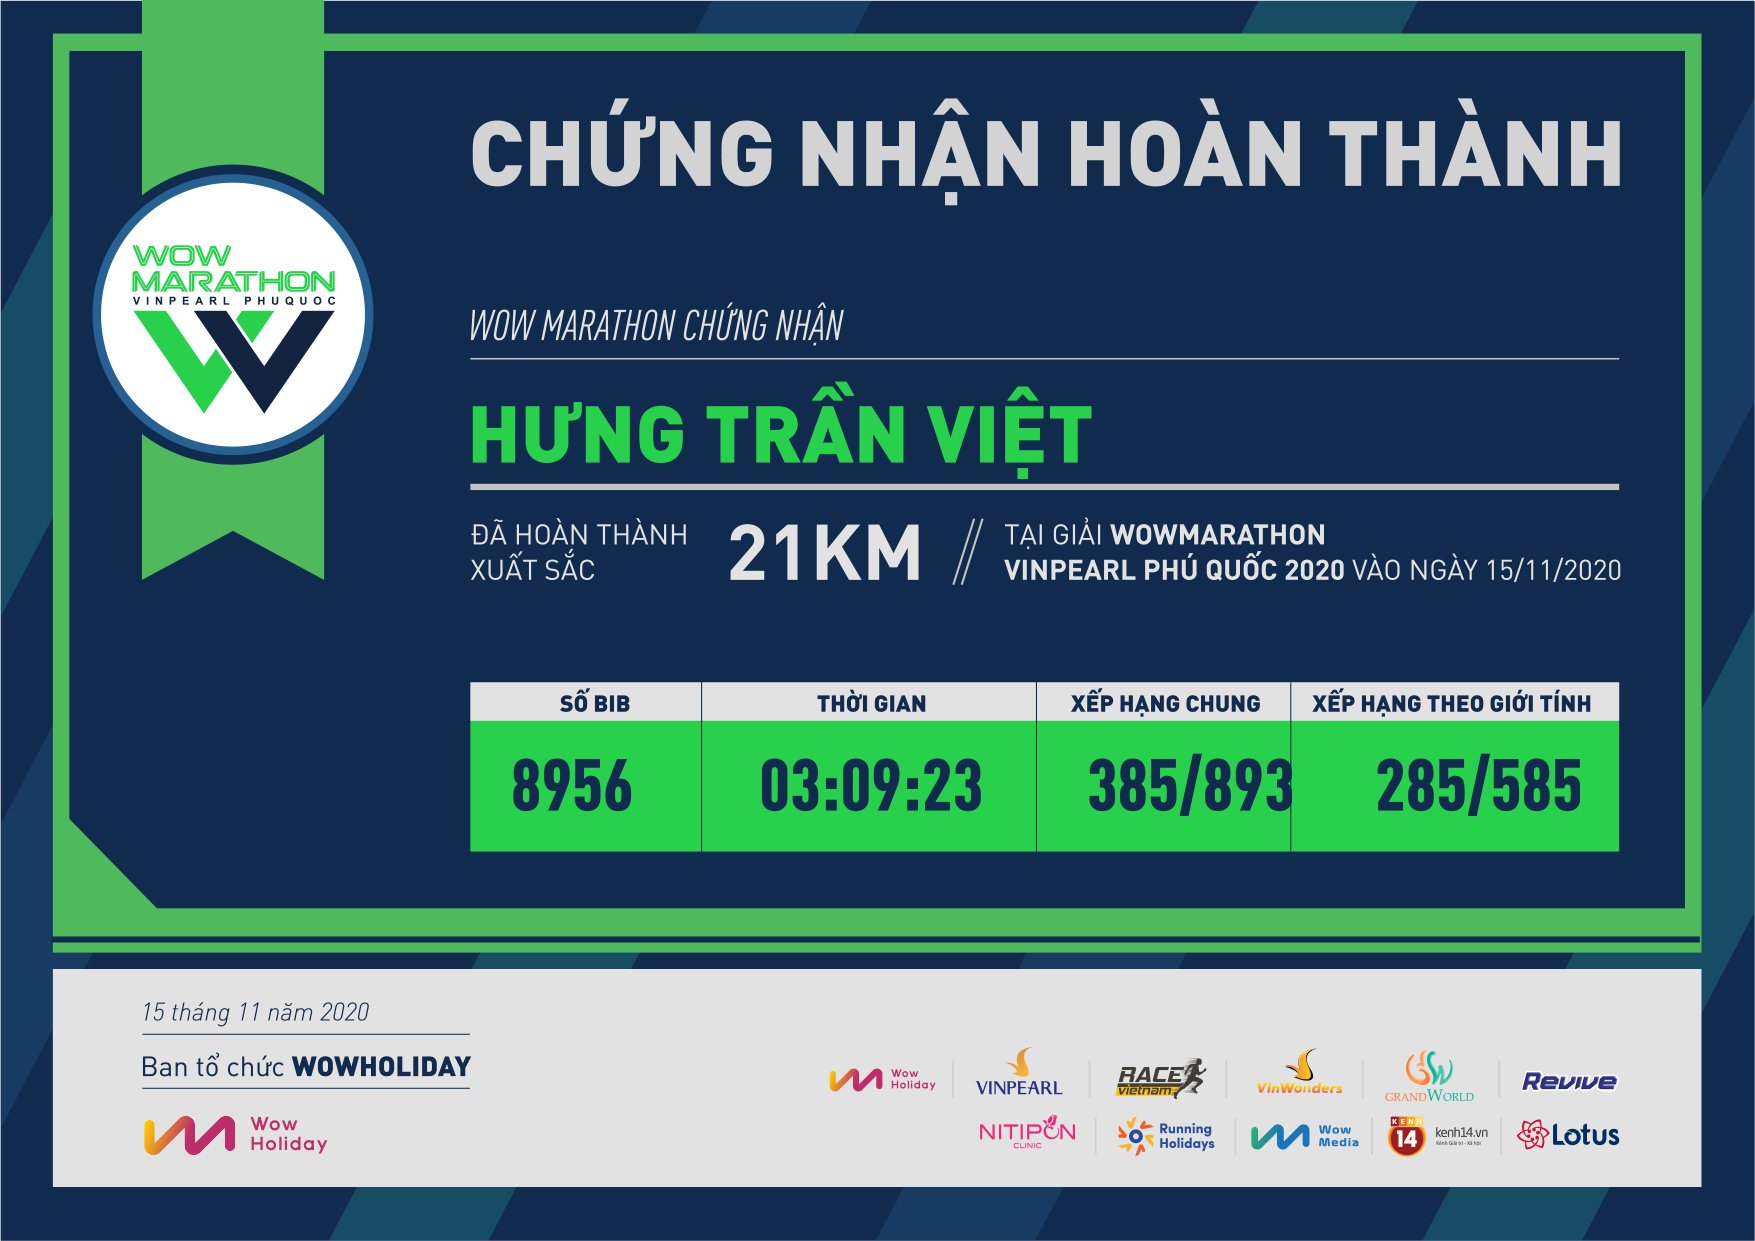 8956 - Hưng Trần Việt